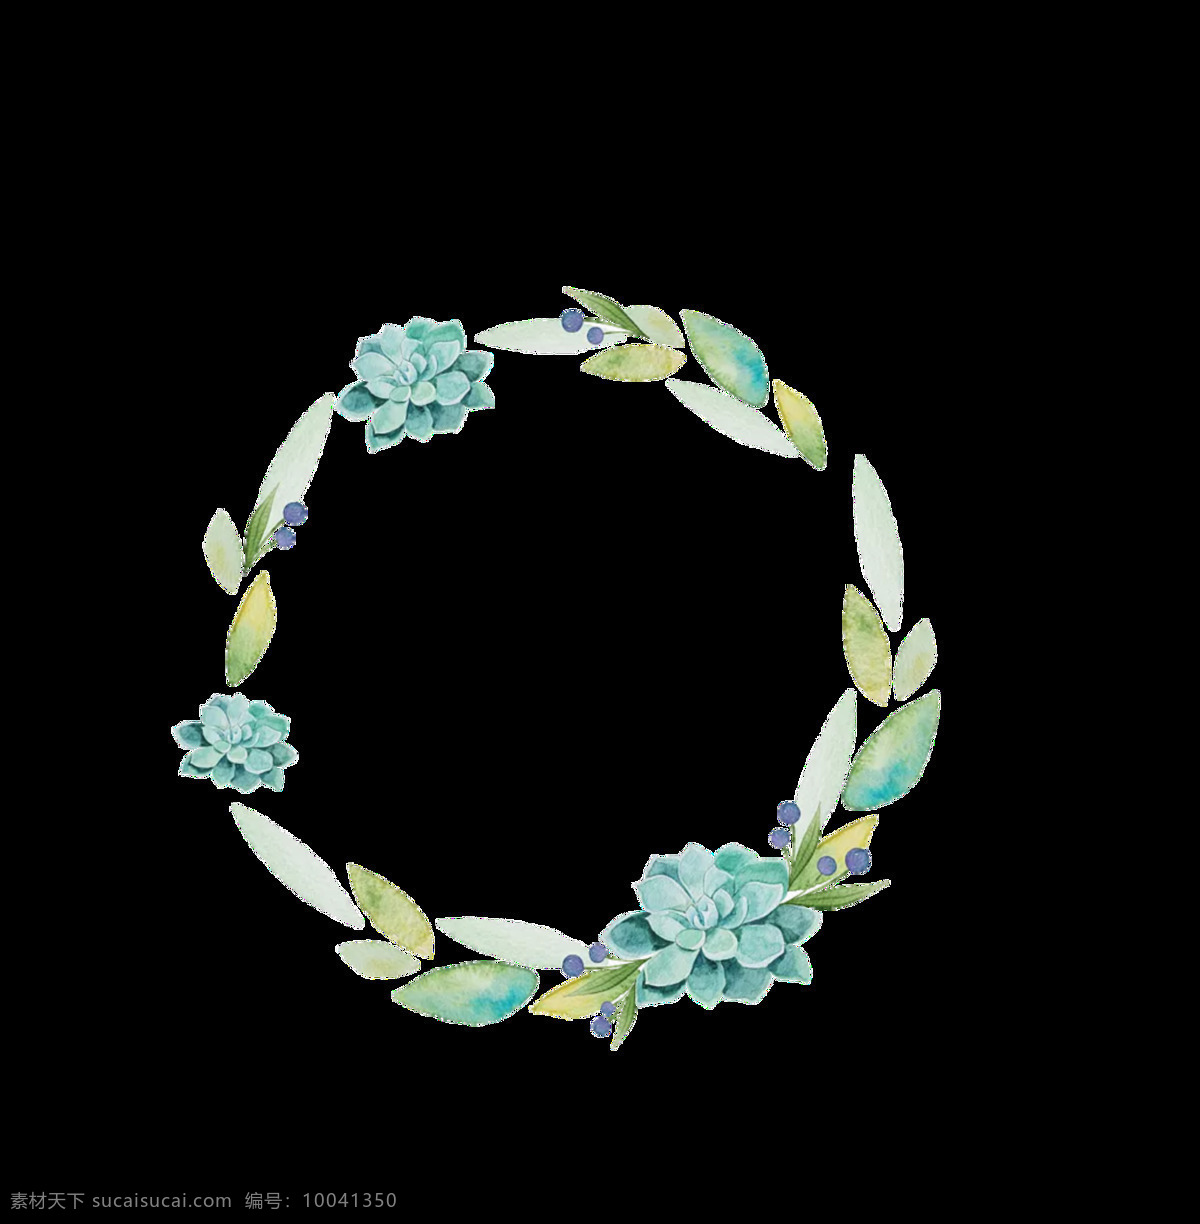 清新 淡 蓝色 手绘 花环 装饰 元素 淡蓝色花朵 淡雅风格 花瓣 花环图案 圆形花环